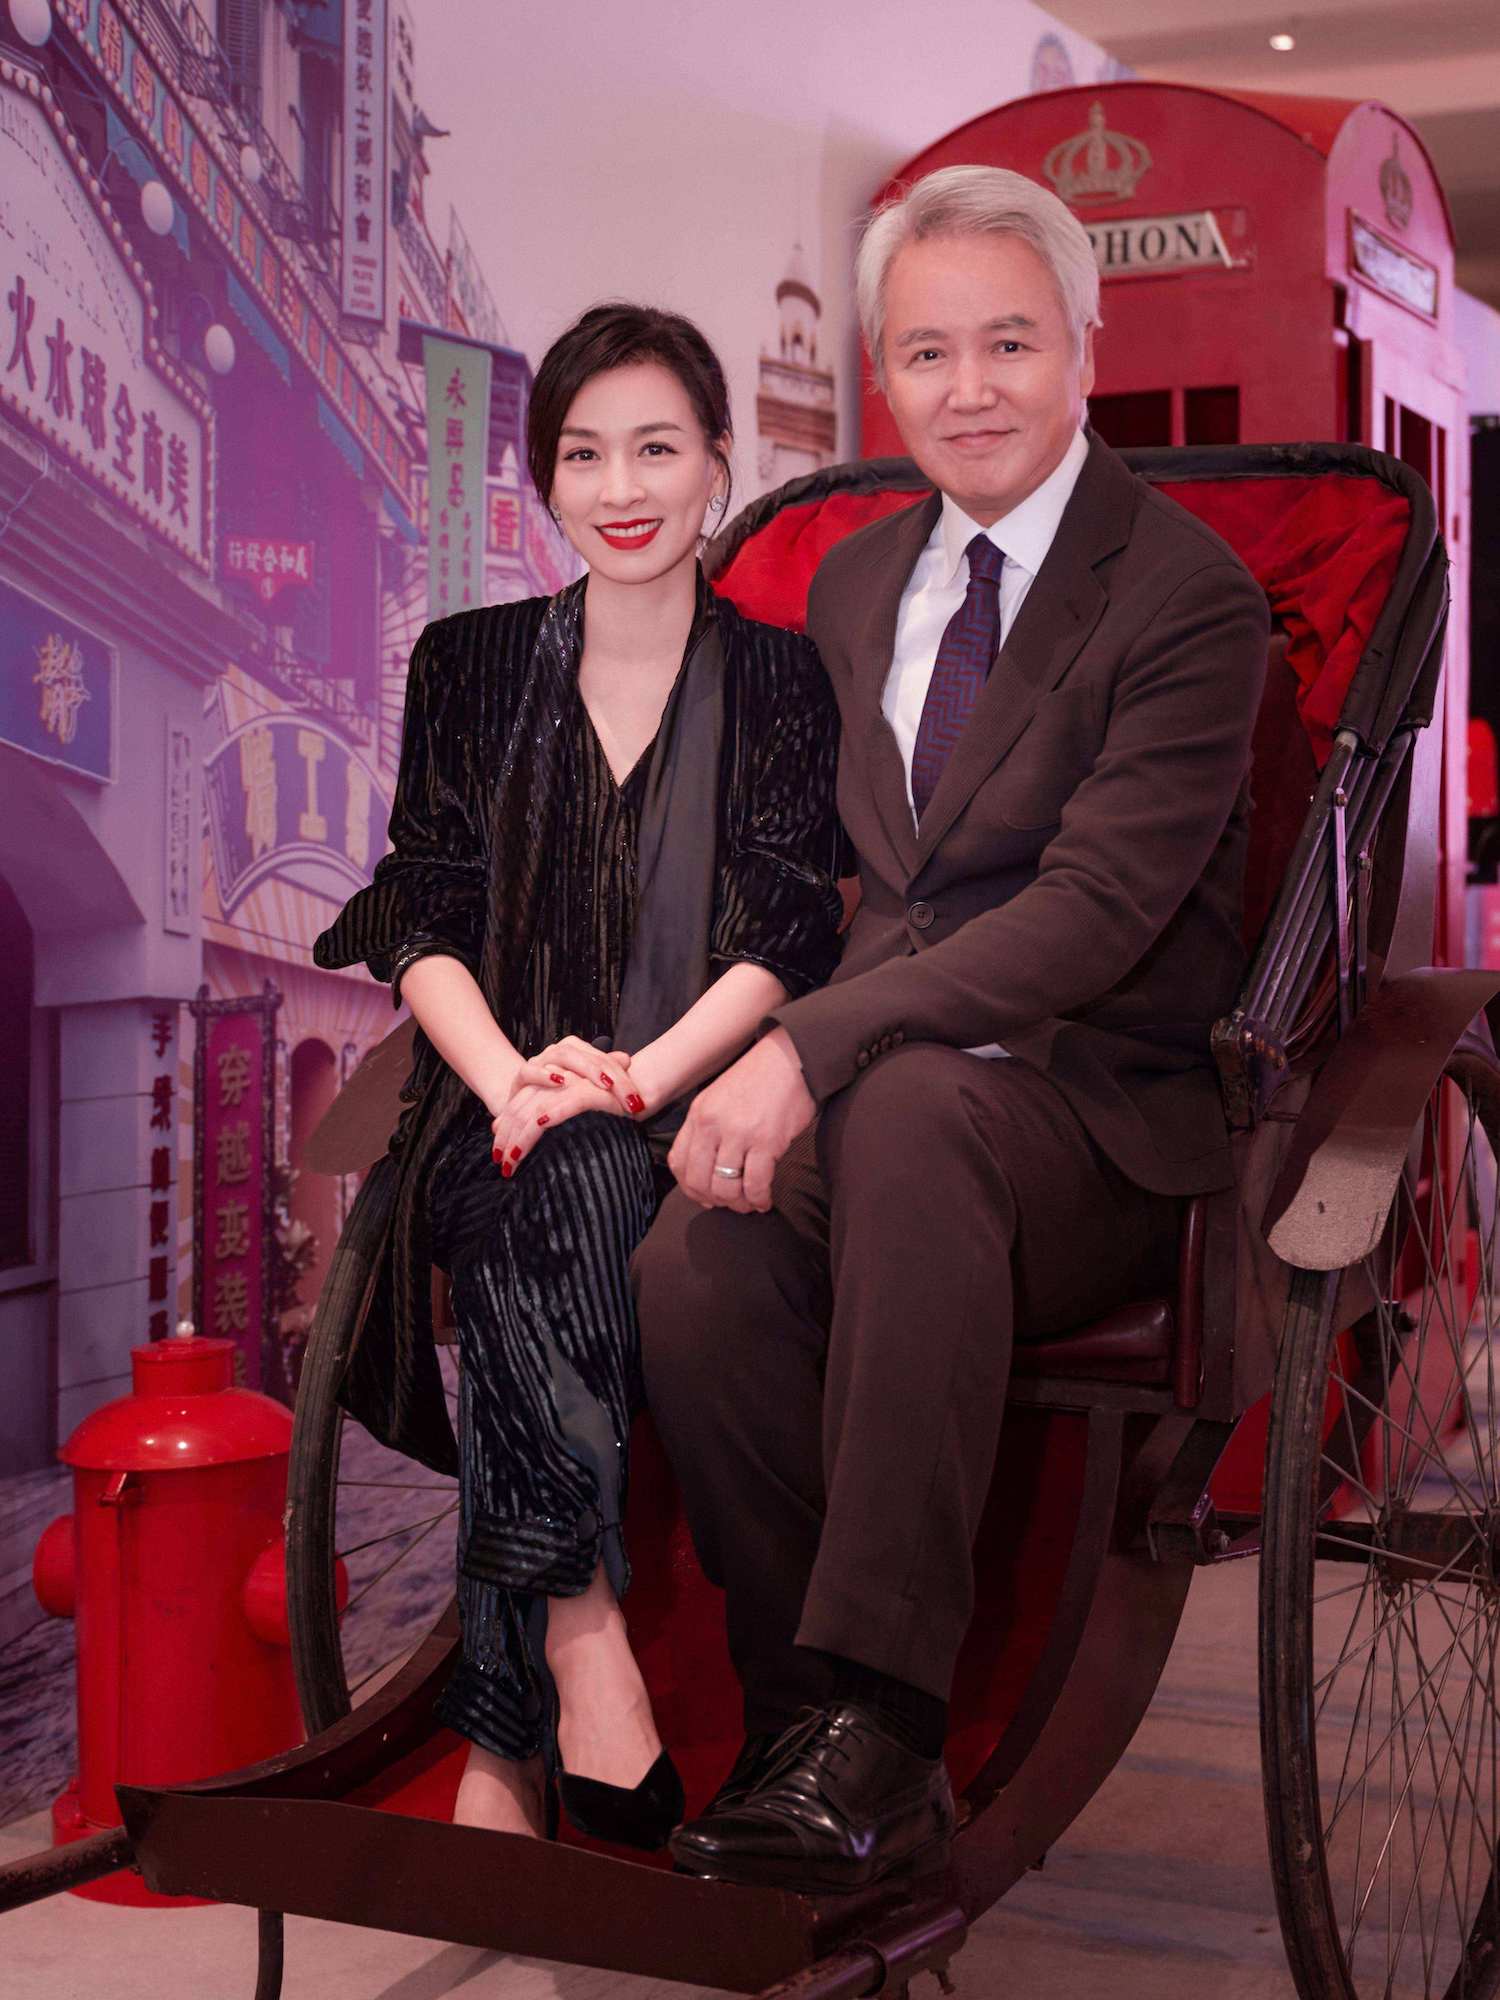 Chuyện làng sao - Vợ chồng nữ diễn viên Trương Đình tái xuất sau khi bị 'đóng băng' tài sản (Hình 2).